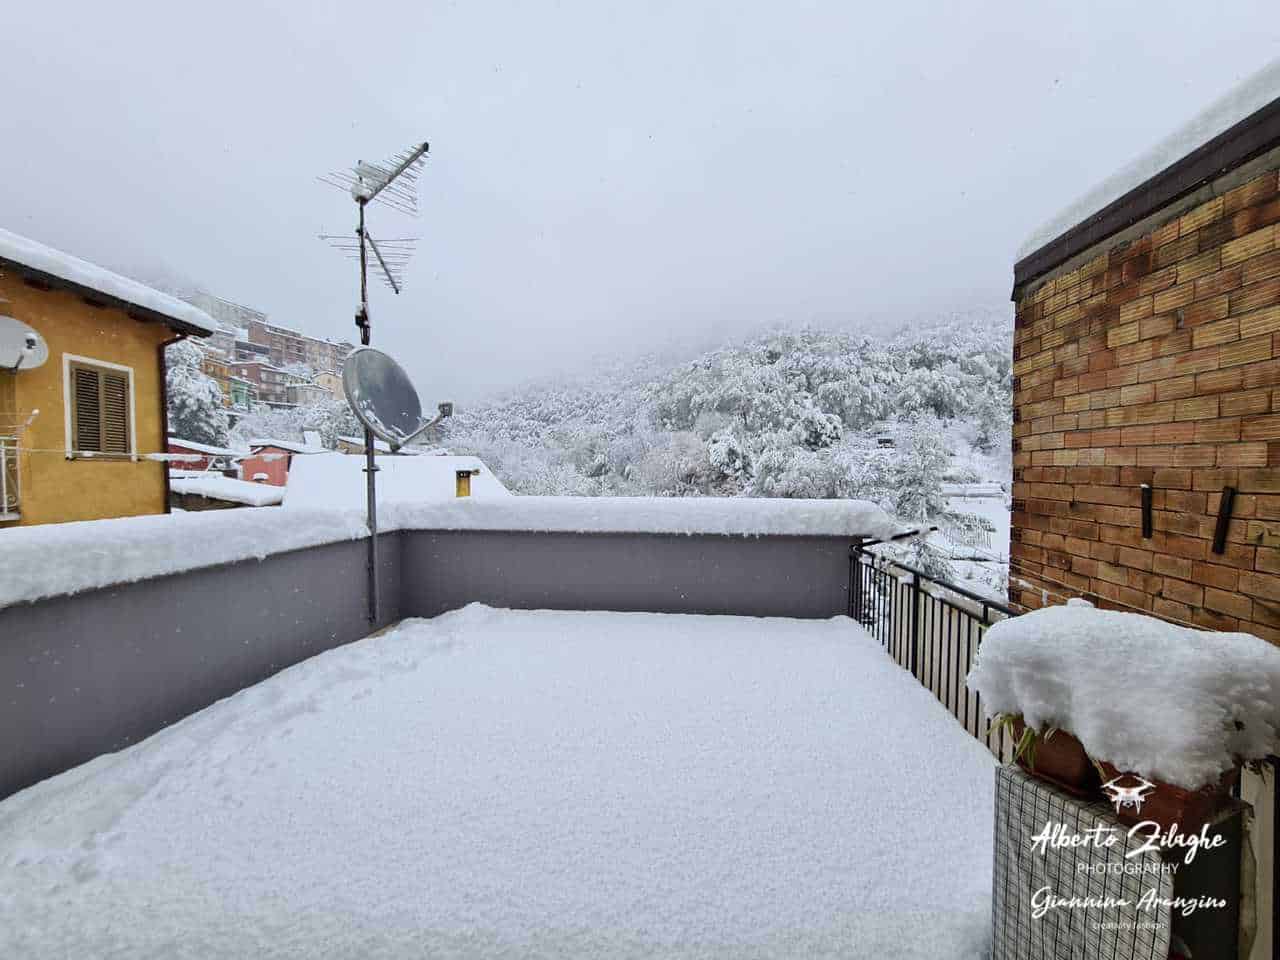 WhatsApp Image 2021 11 29 at 11.35.21 - Sardegna, meteo da Desulo, la grande neve del 29 novembre 2021